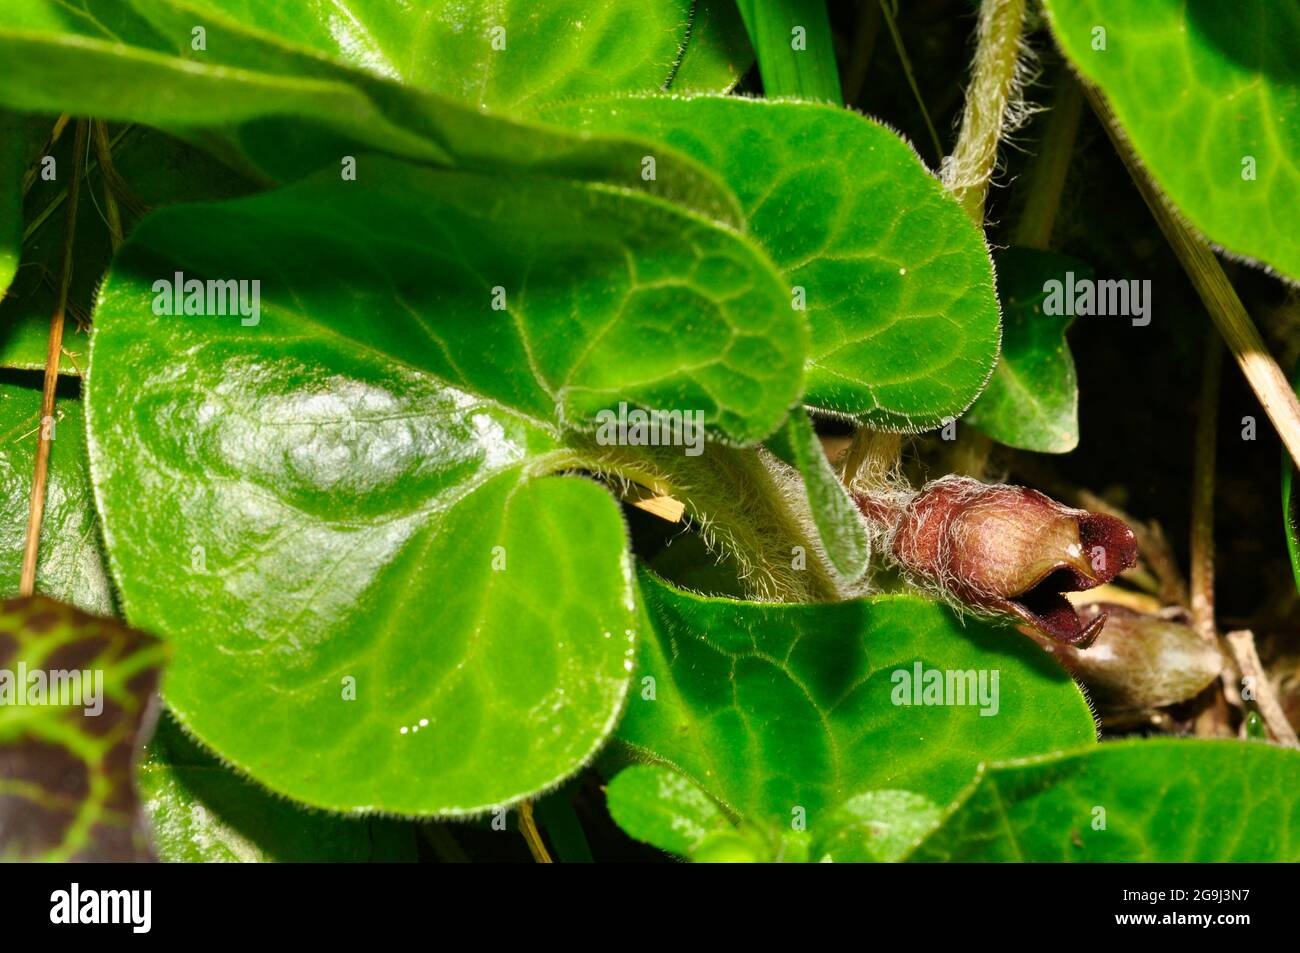 Asarabacca flower'Asarum Europaeum', gingembre sauvage européen, spikenard sauvage et noisette, est une espèce de plante à fleurs de la famille des millepertuis Banque D'Images